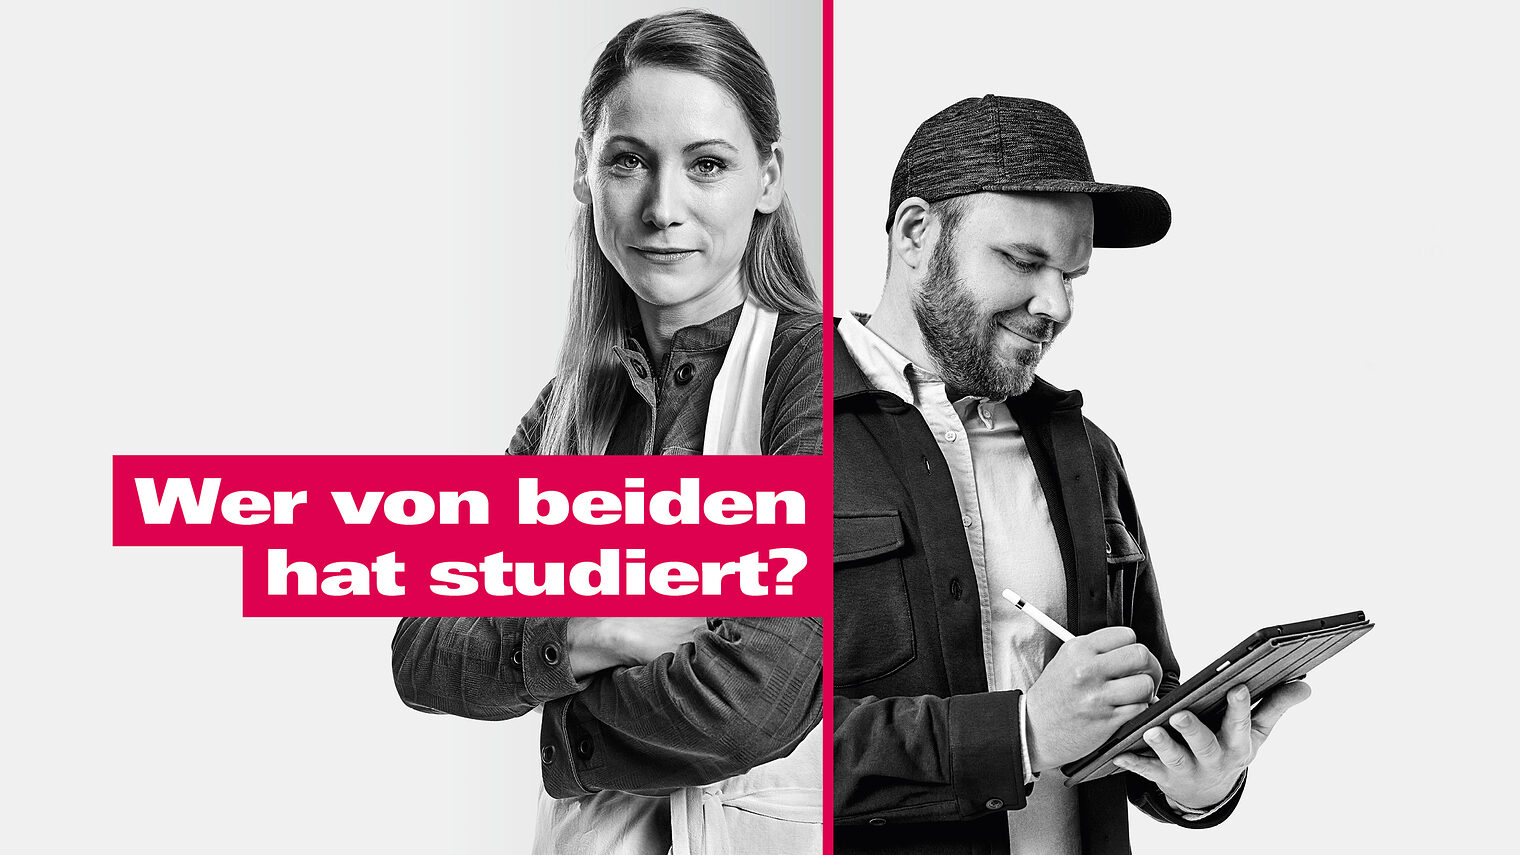 Motiv mit Mann und Frau aus der Imagekampagne des deutschen Handwerks und Schriftzug: "Wer von beiden hat studiert?"